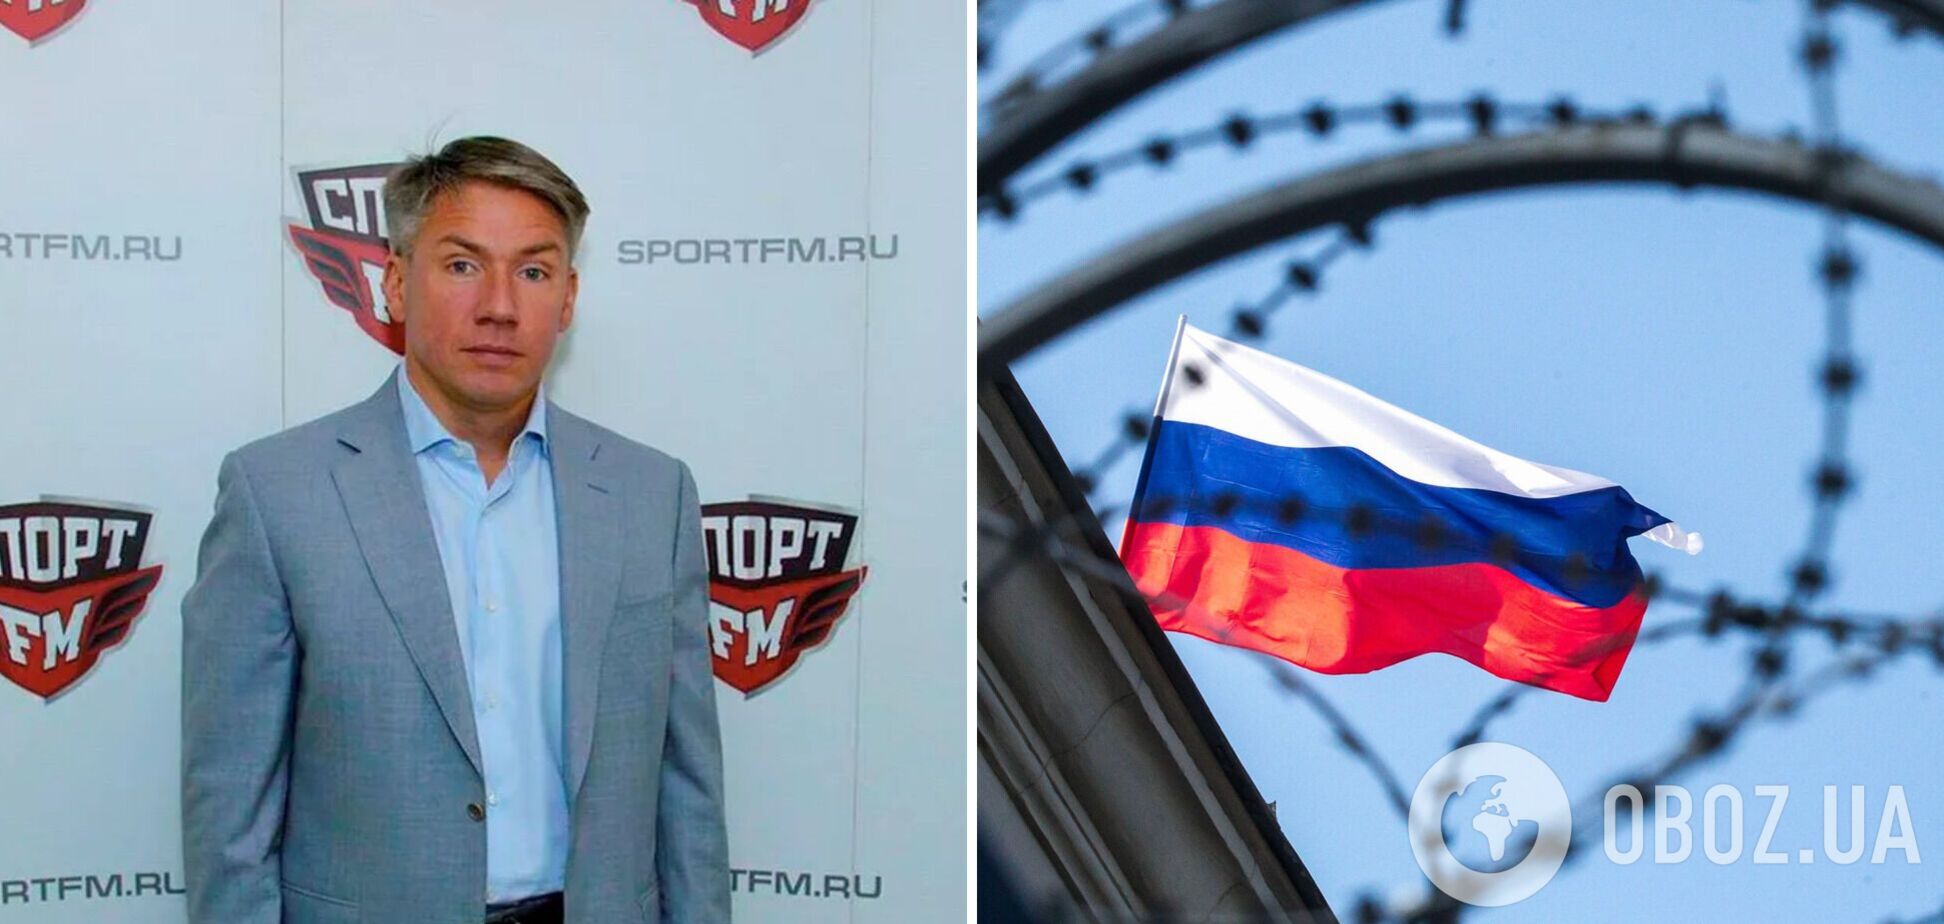 'Багатополярний бункерний світ': чиновник із РФ став посміховиськом у мережі через слова, що 'з нами не хочуть грати' у футбол